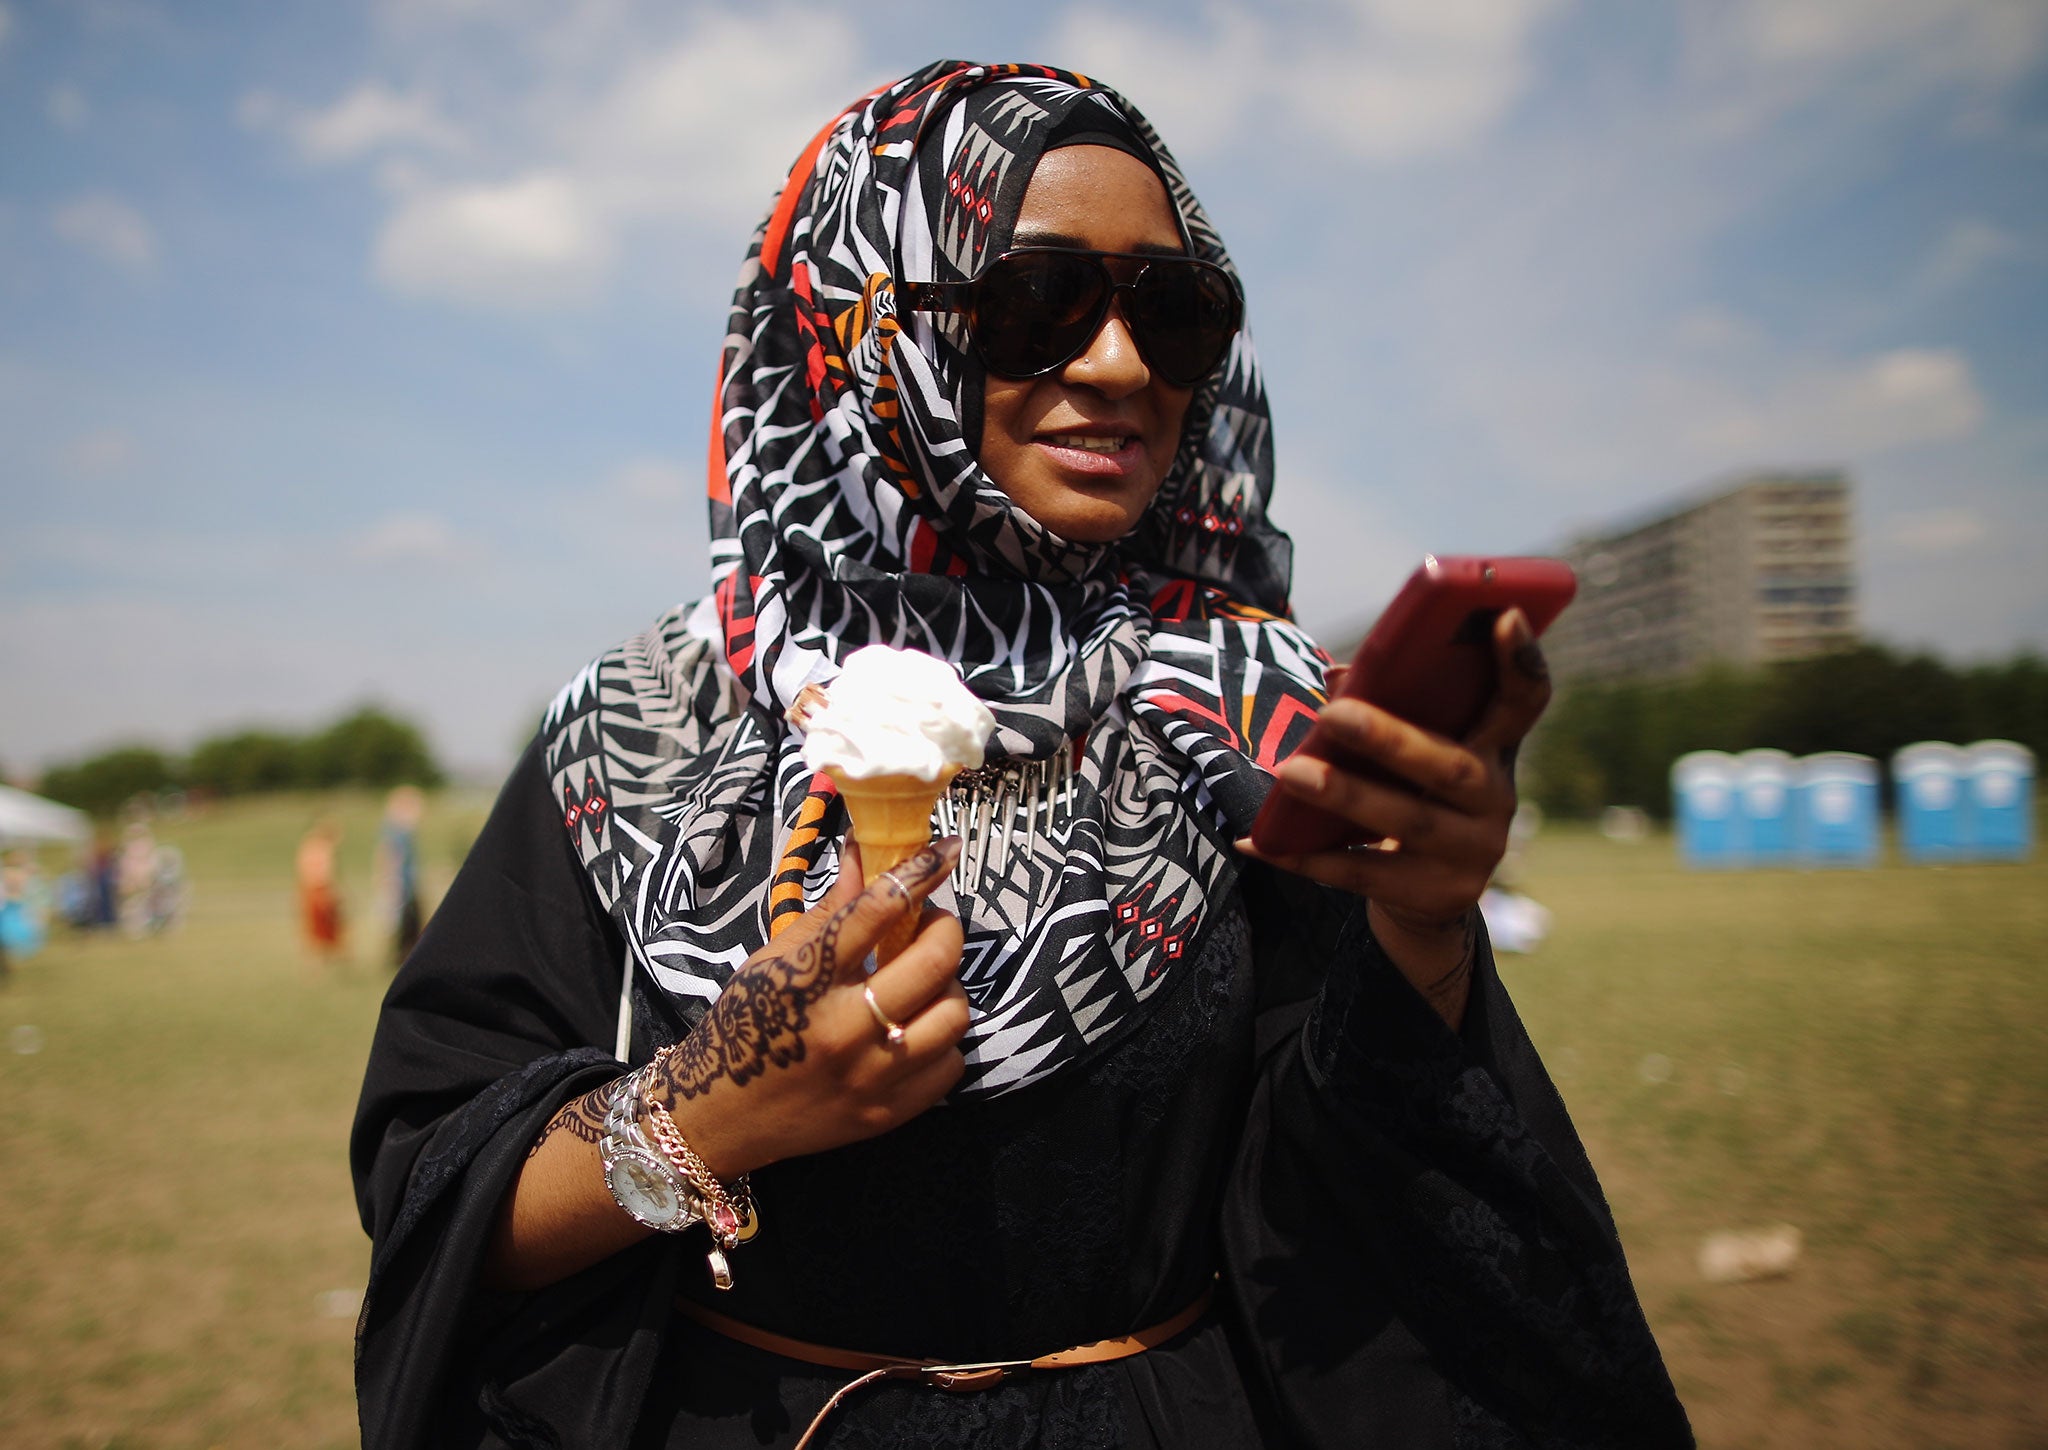 A Muslim woman enjoys an ice-cream during an Eid celebration fun fair in Burgess Park